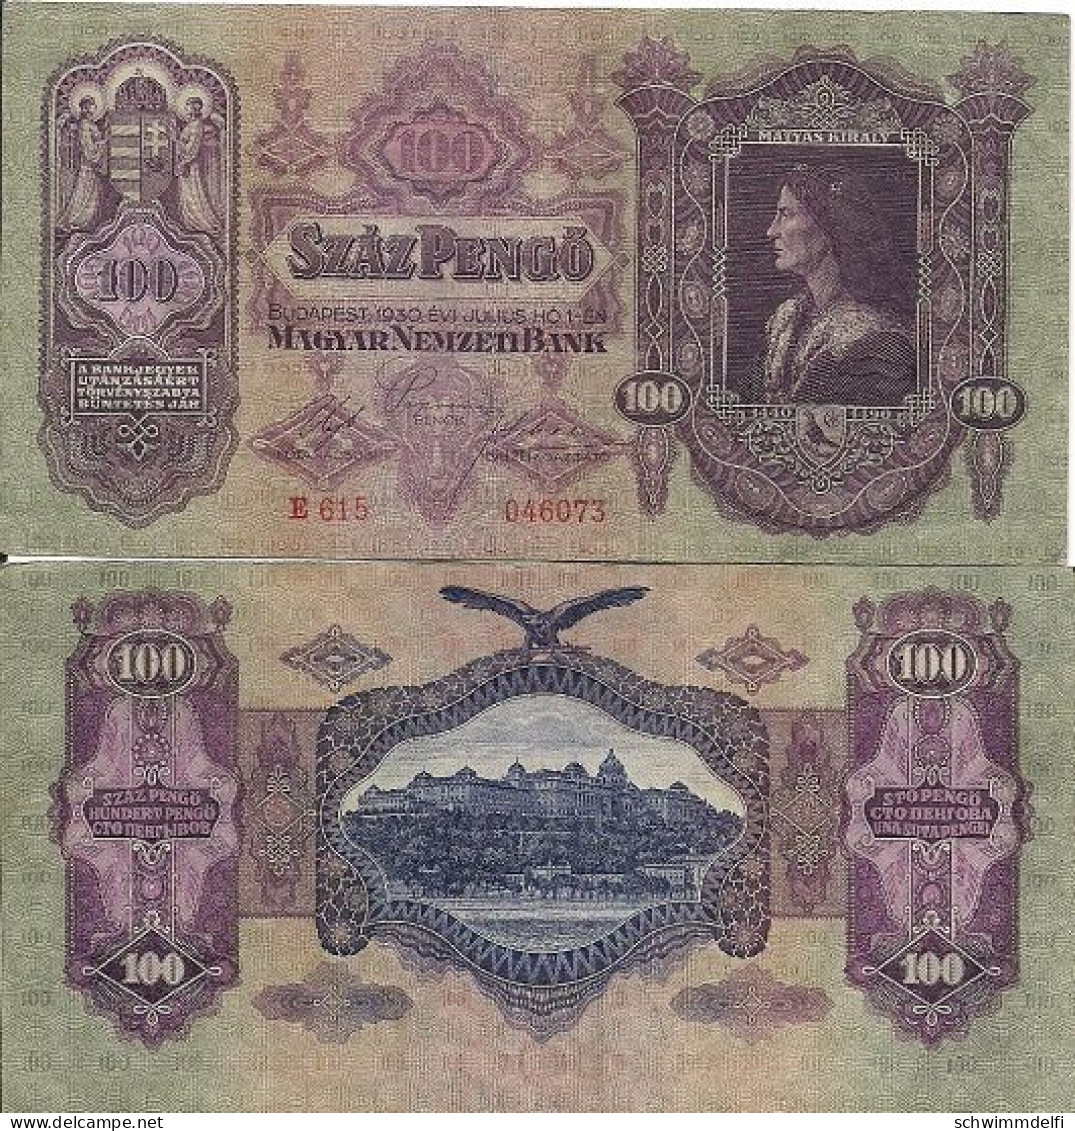 HUNGRÍA - UNGARN - HUNGARY - 100 PENGÖ 1930 - EBC - SEHR SCHON - VERY FINE - Hungría